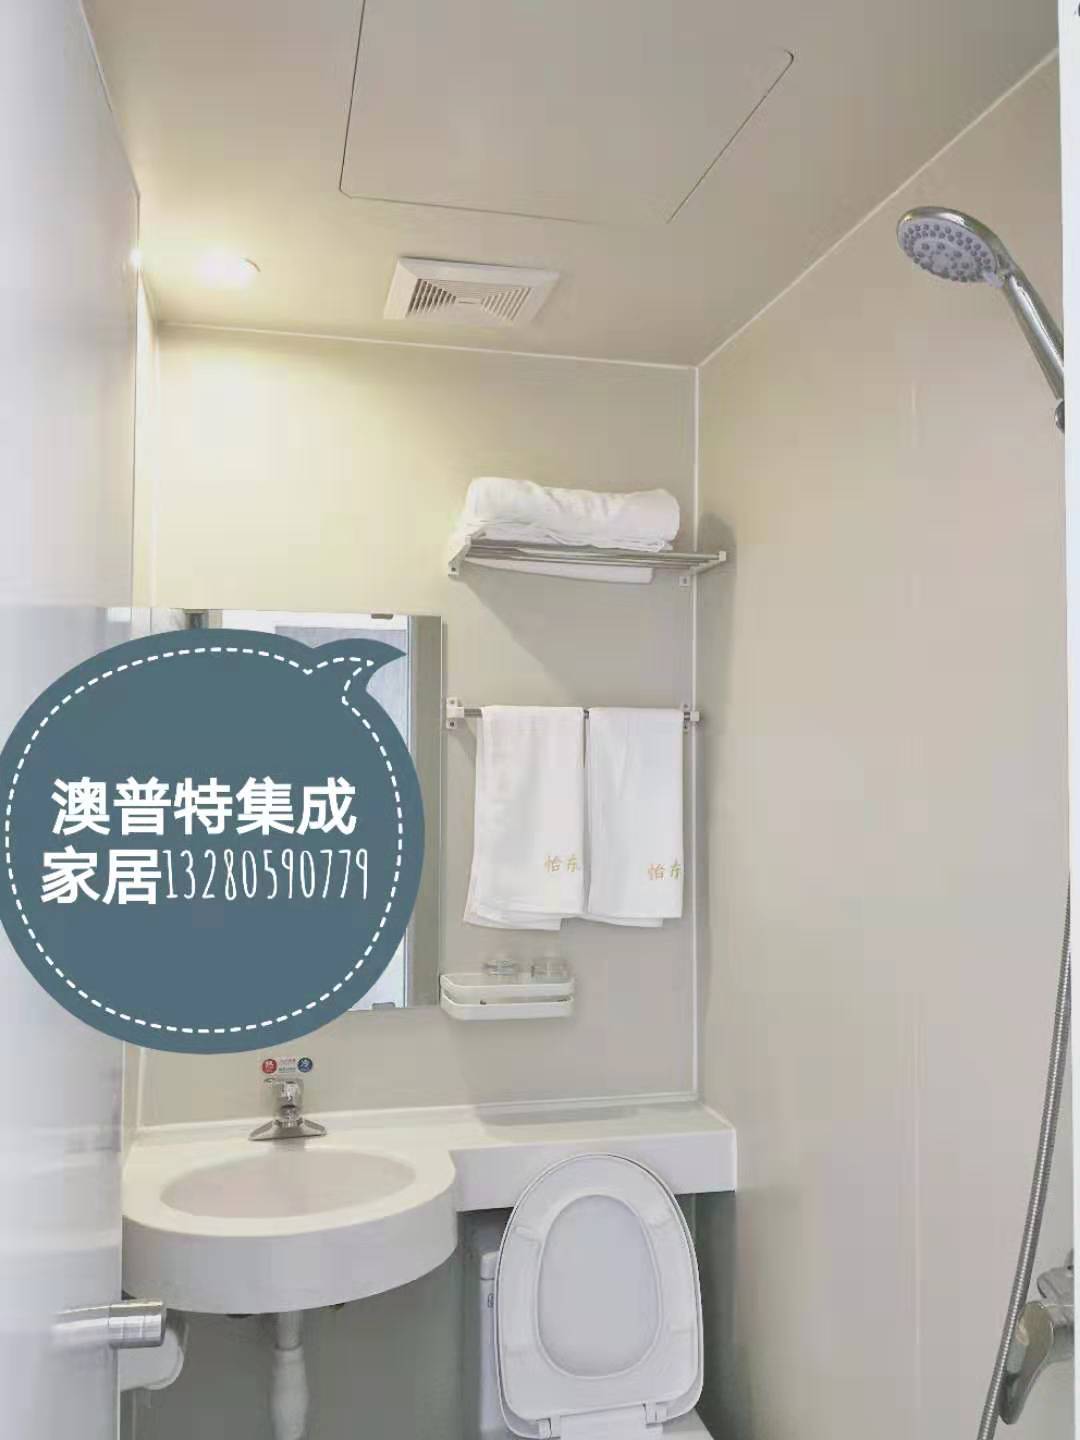 一体式整体卫生间 酒店卫生间 临沂澳普特集成家居 日式整体浴室房 生产厂家